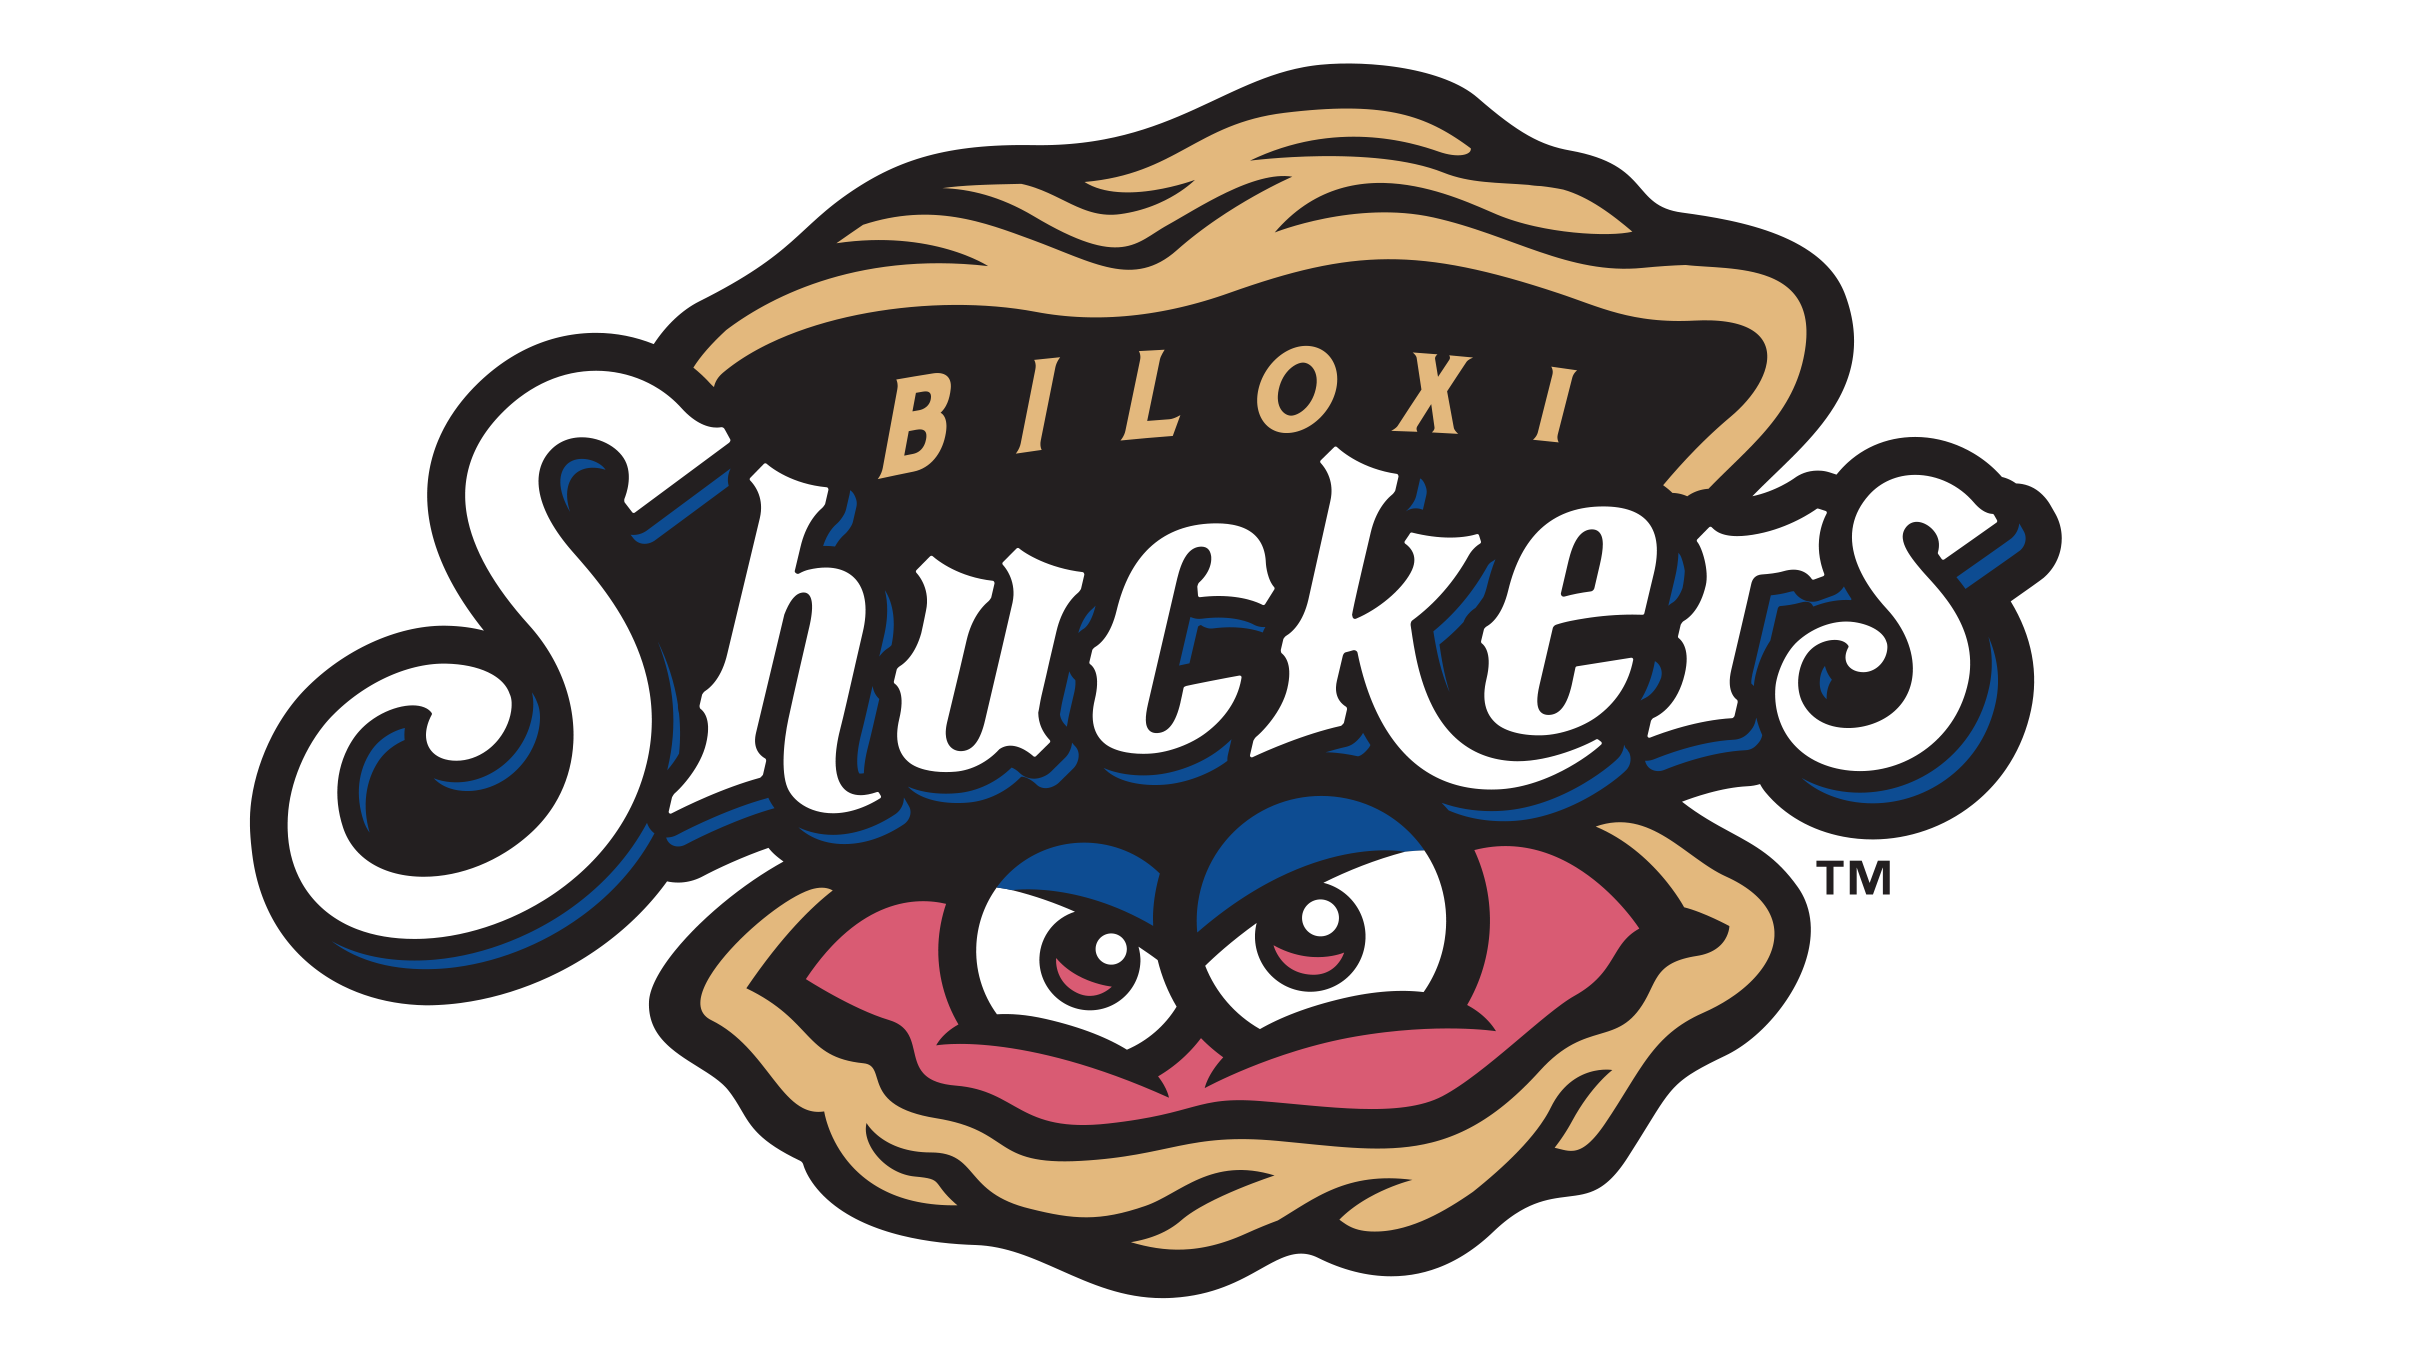 Biloxi Shuckers at MGM Park